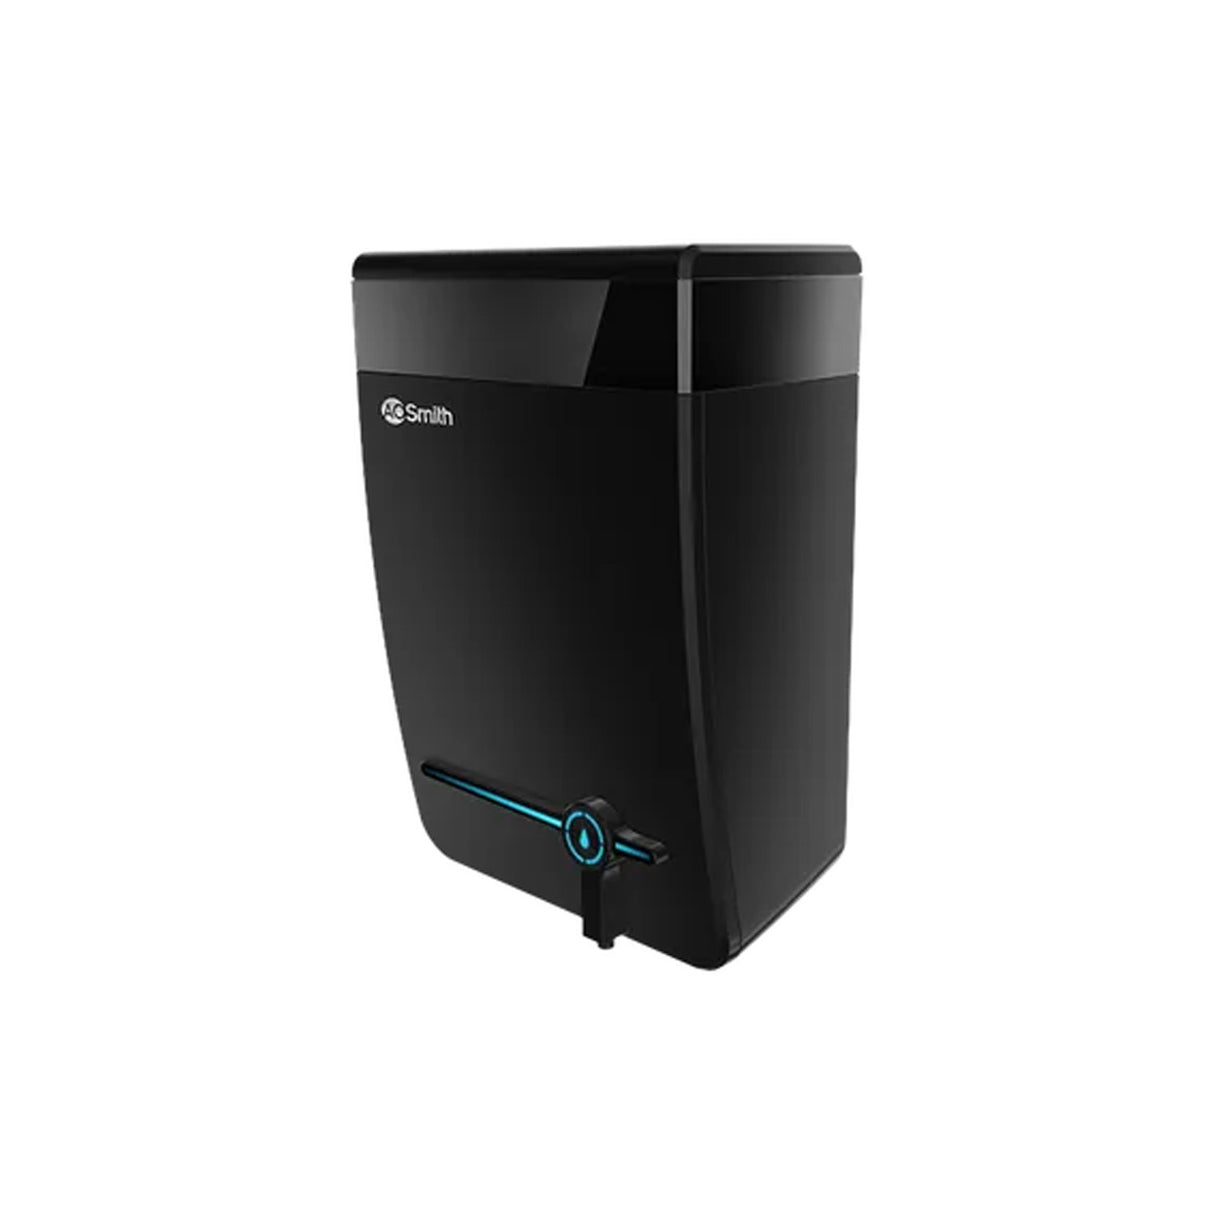 Sleek Black AO Smith Intelli Plus 4.5L Water Purifier – Best in Class Water Filtration.